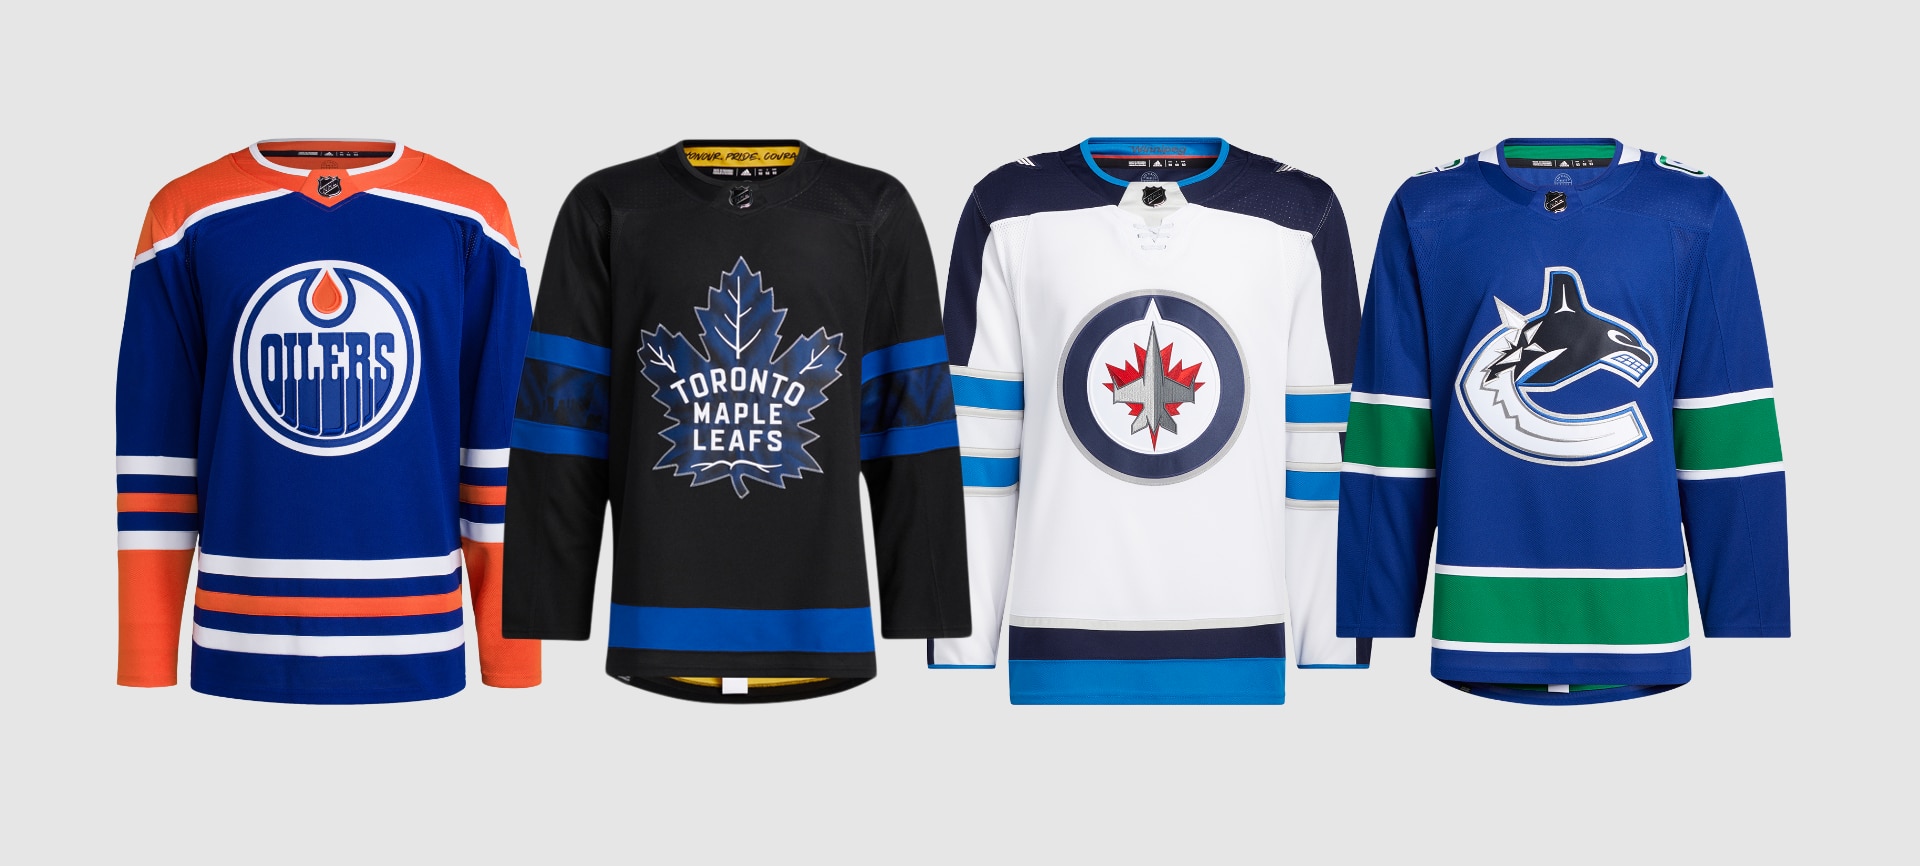 NHL Playoff Jerseys & Fan Wear